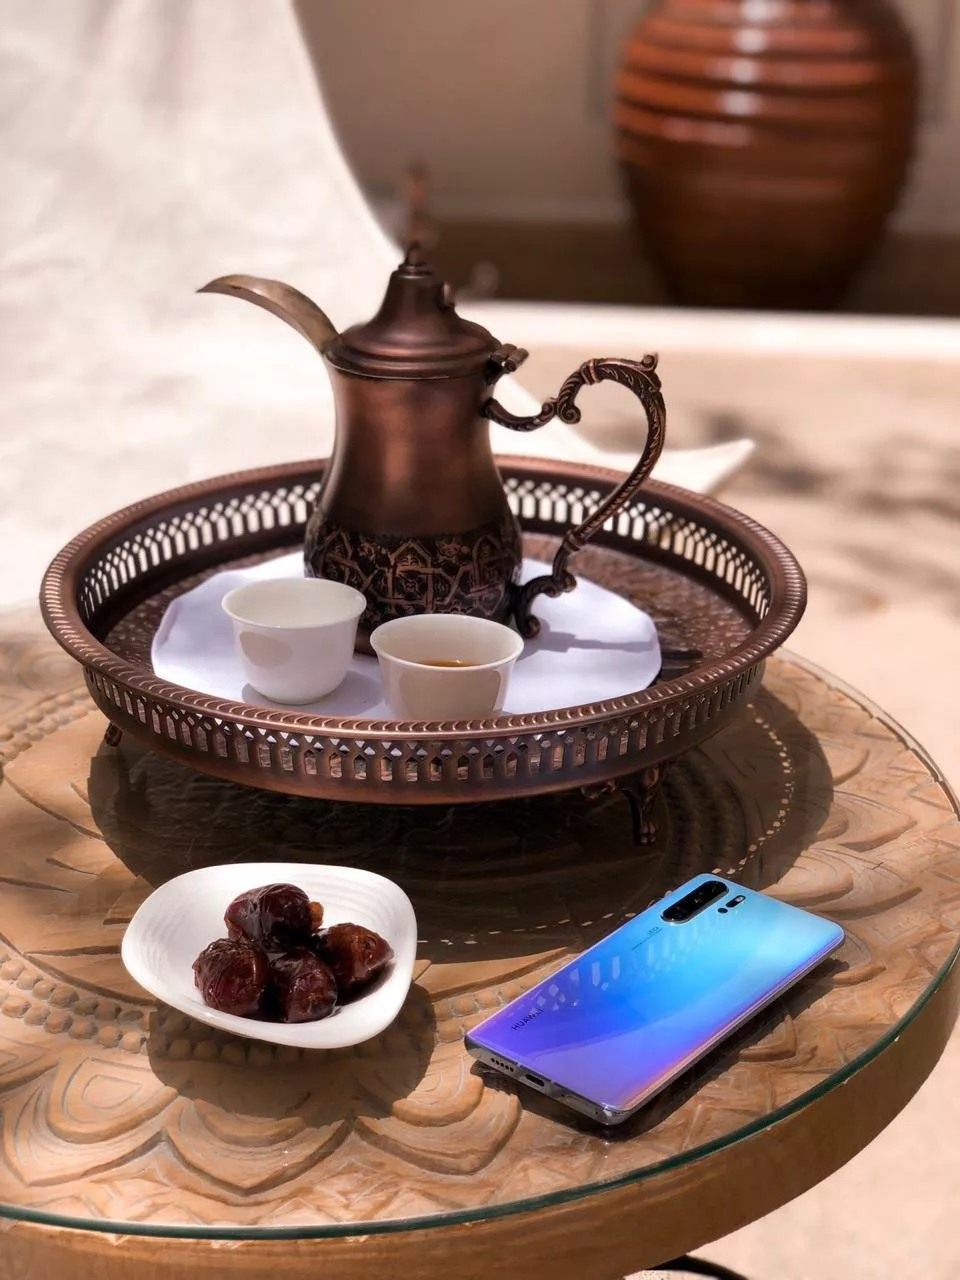 خلال شهر رمضان، أنقلي الفيديوهات الخاصة بالسوشيل ميديا إلى مستوى إستثنائي مع هاتف HUAWEI P30 Pro